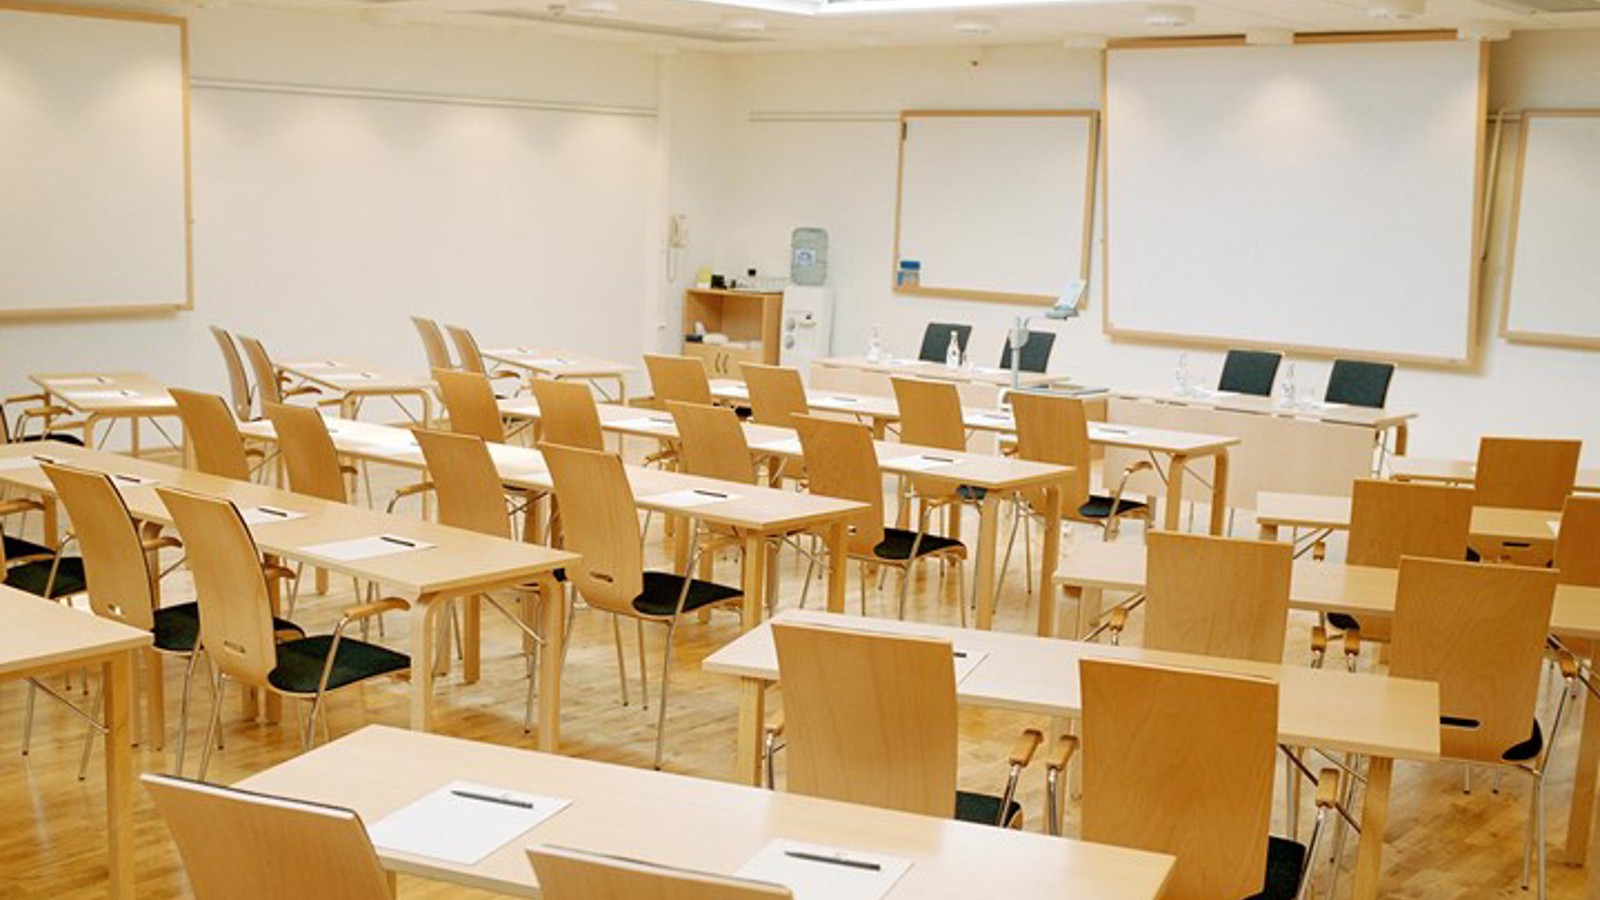 Konferensrum med skolsittning, vita väggar, träfärgade bord och stolar